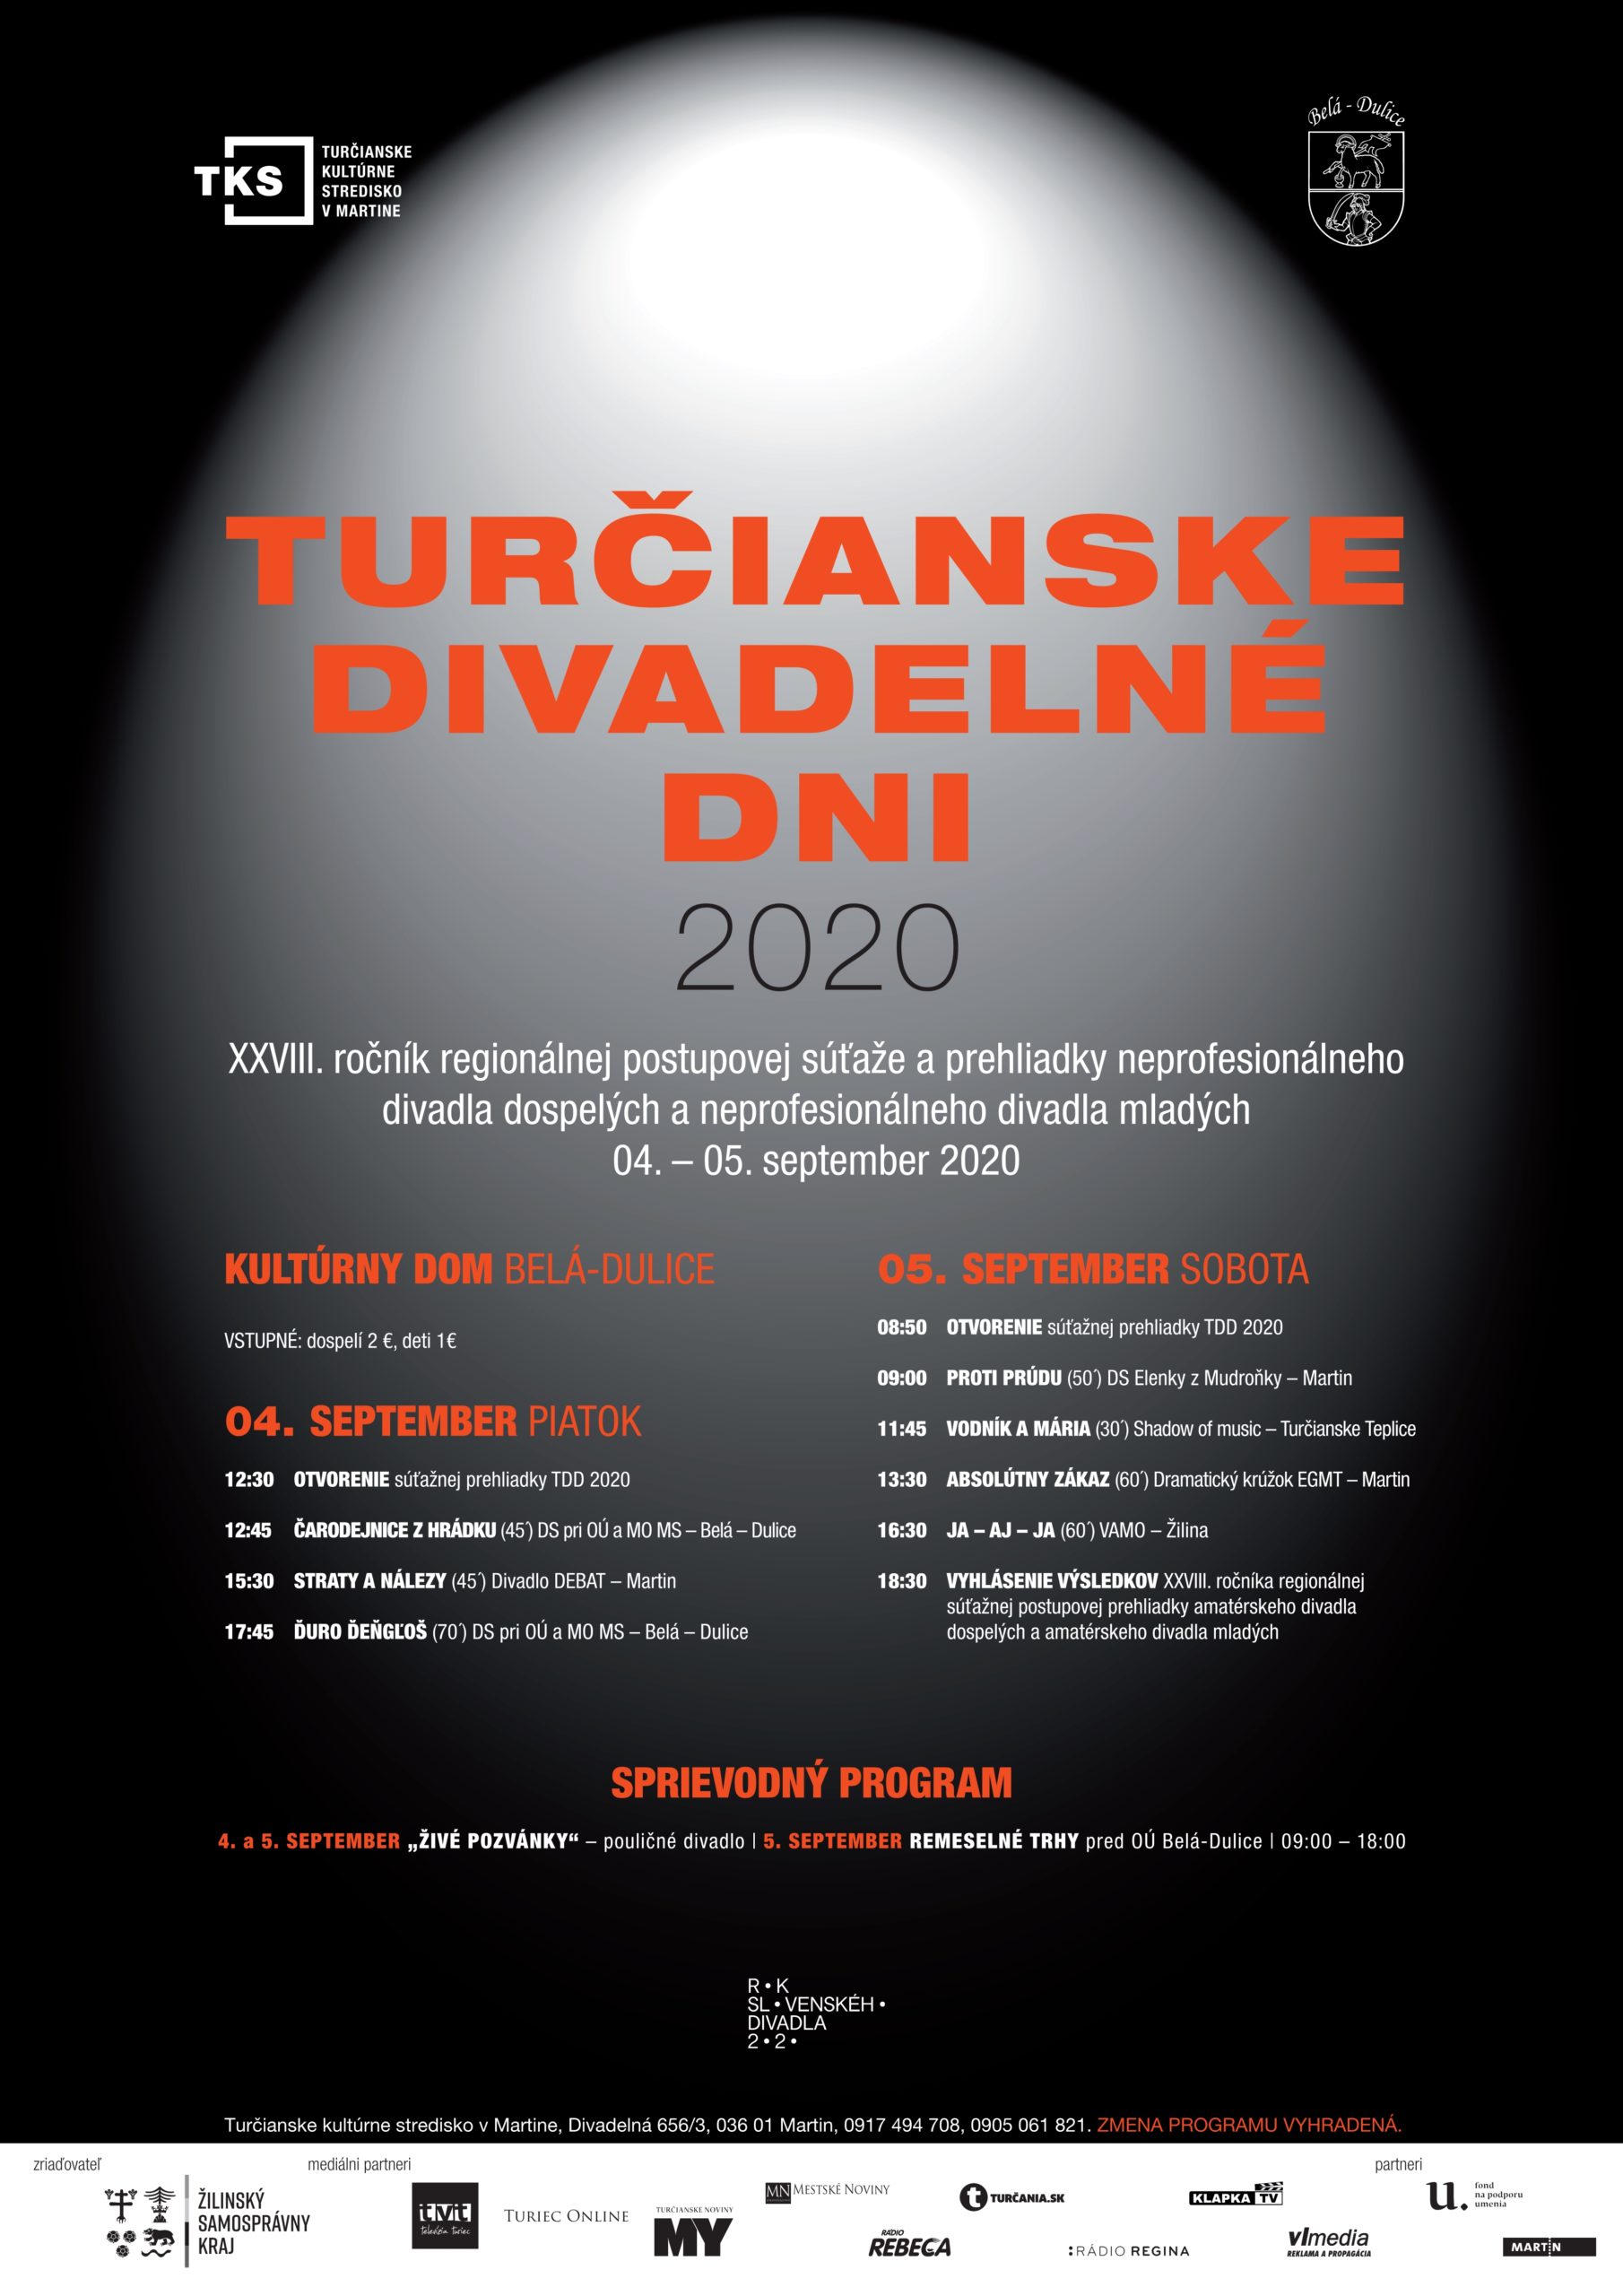 Turčianske divadelné dni 2020